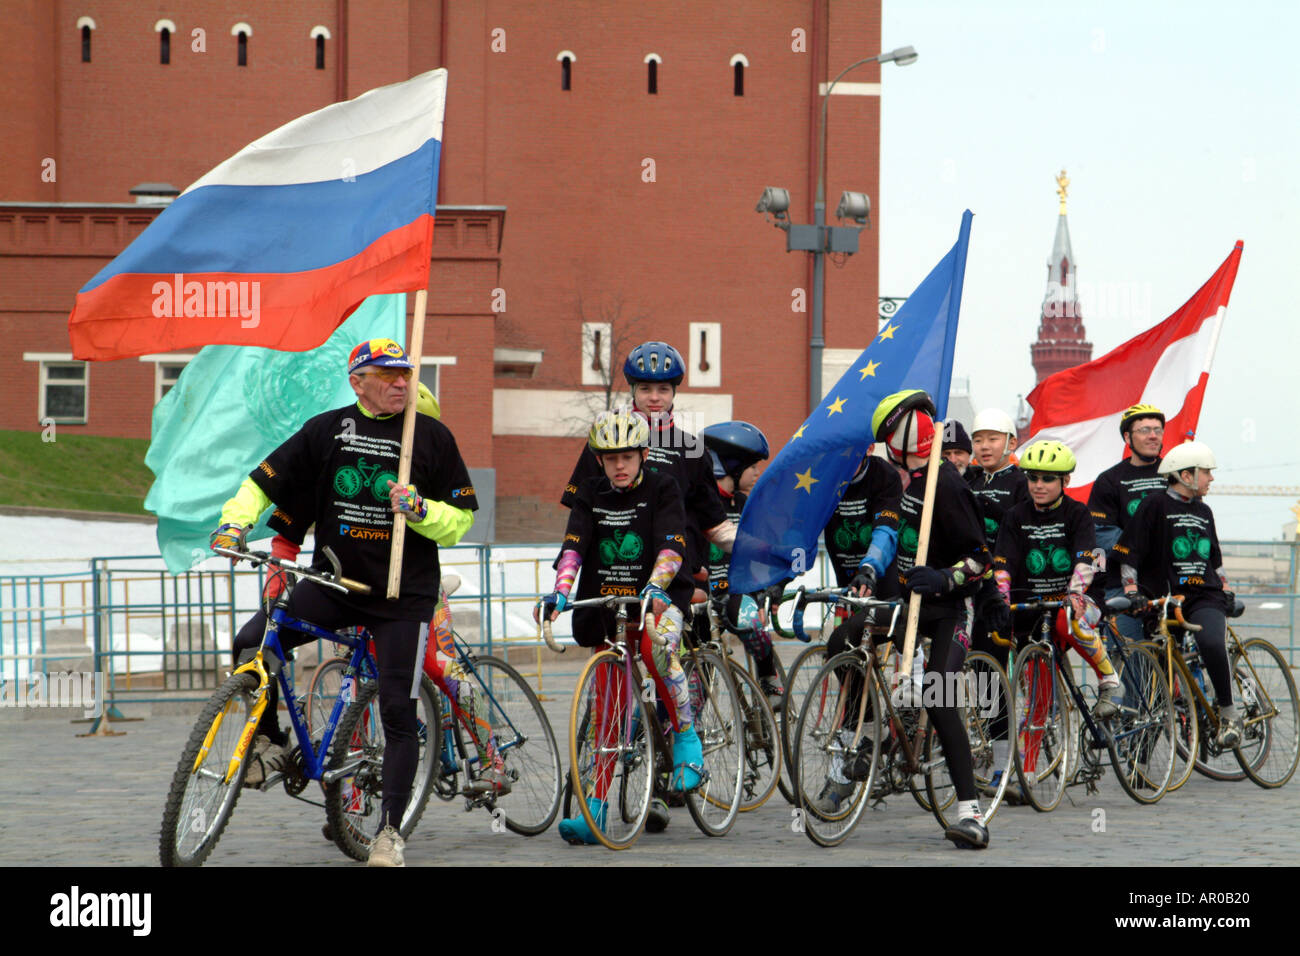 Radfahrer auf Rote Platz Moskau Russland Russische Föderation Internationaler Marathon von Frieden Catyph Tschernobyl Stockfoto